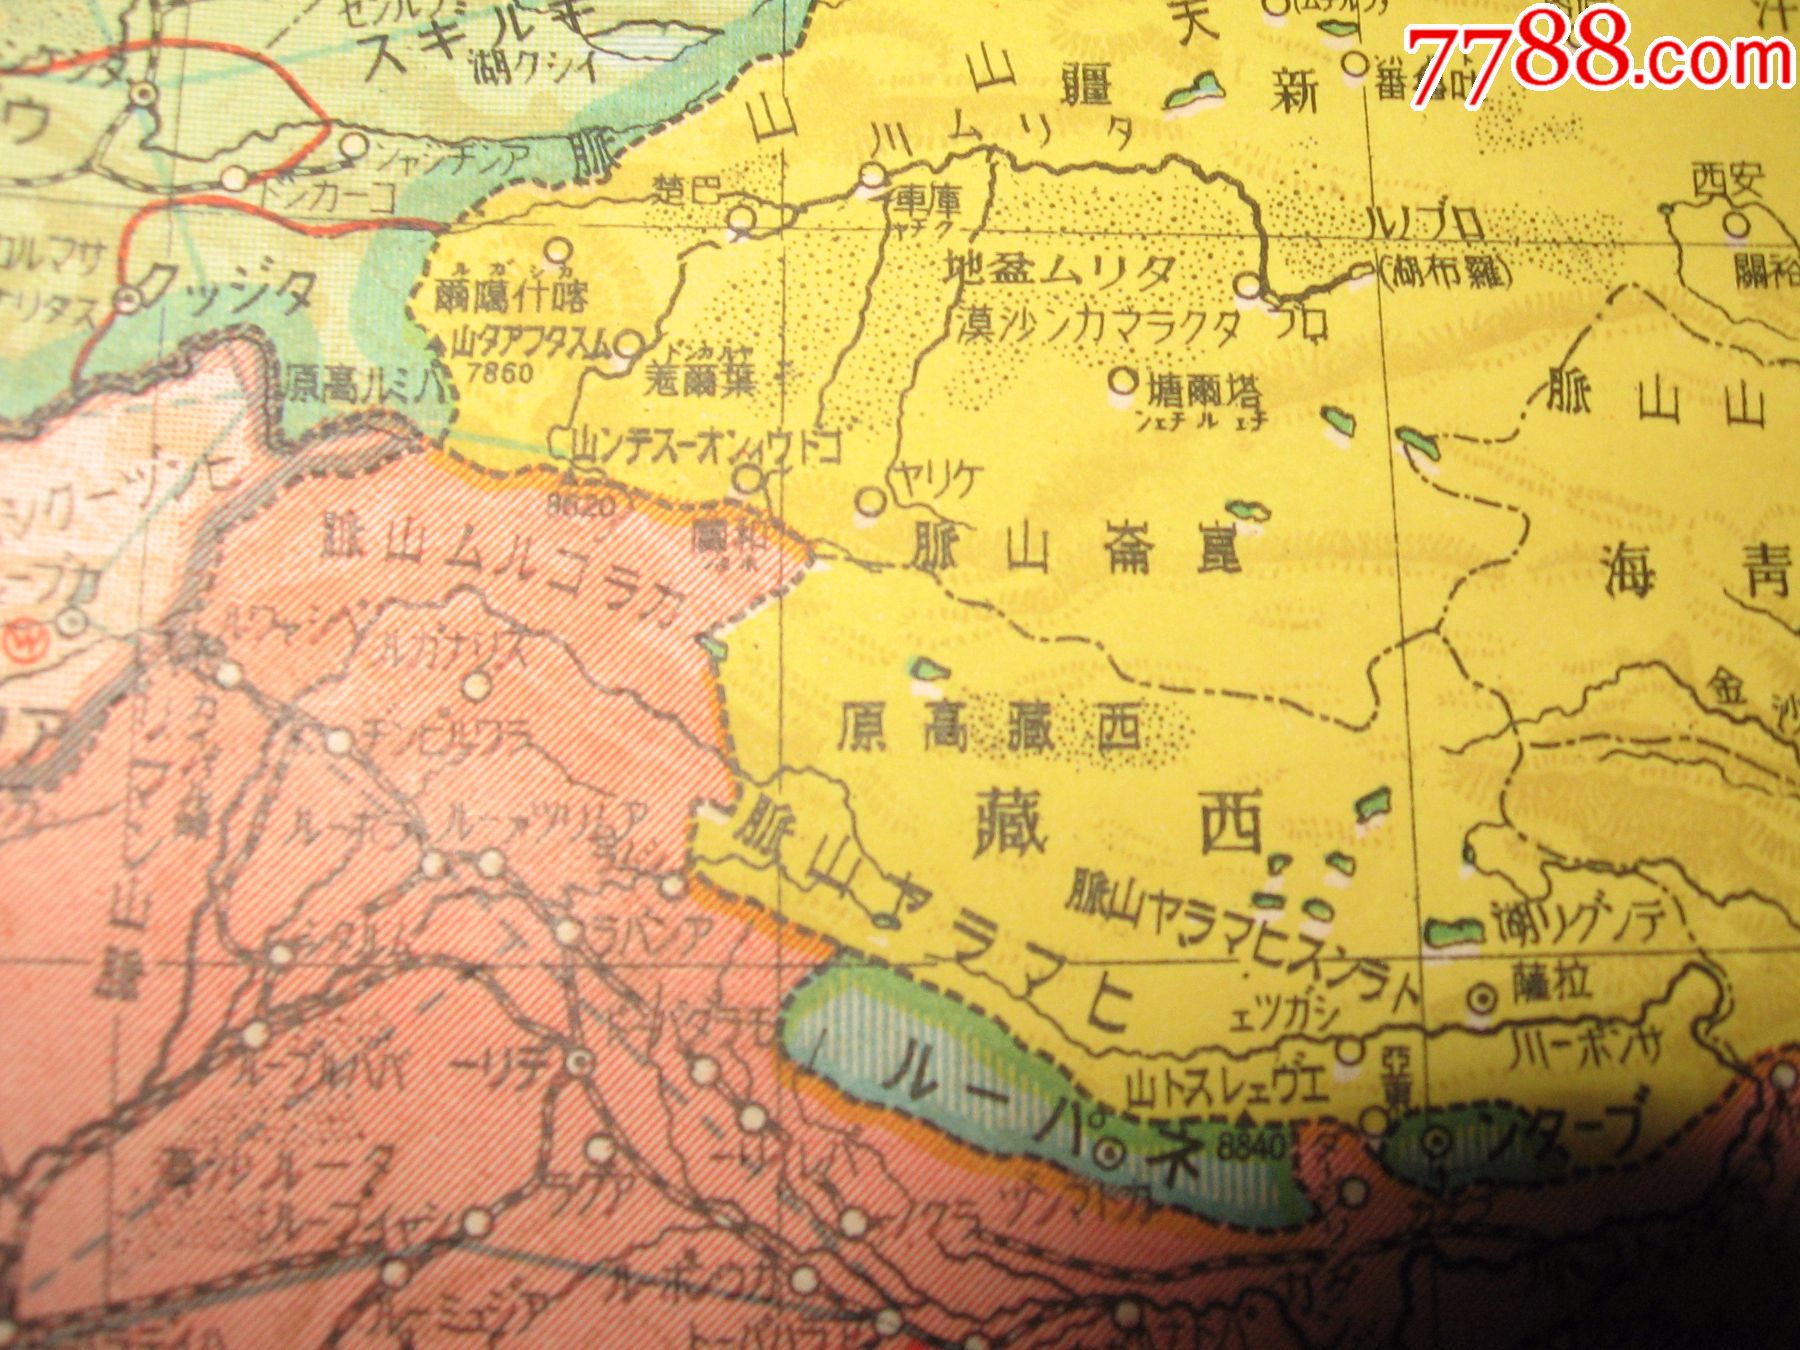 1933年最新世界大地图有中华民国和满洲国内有满洲国要部扬子江沿岸附